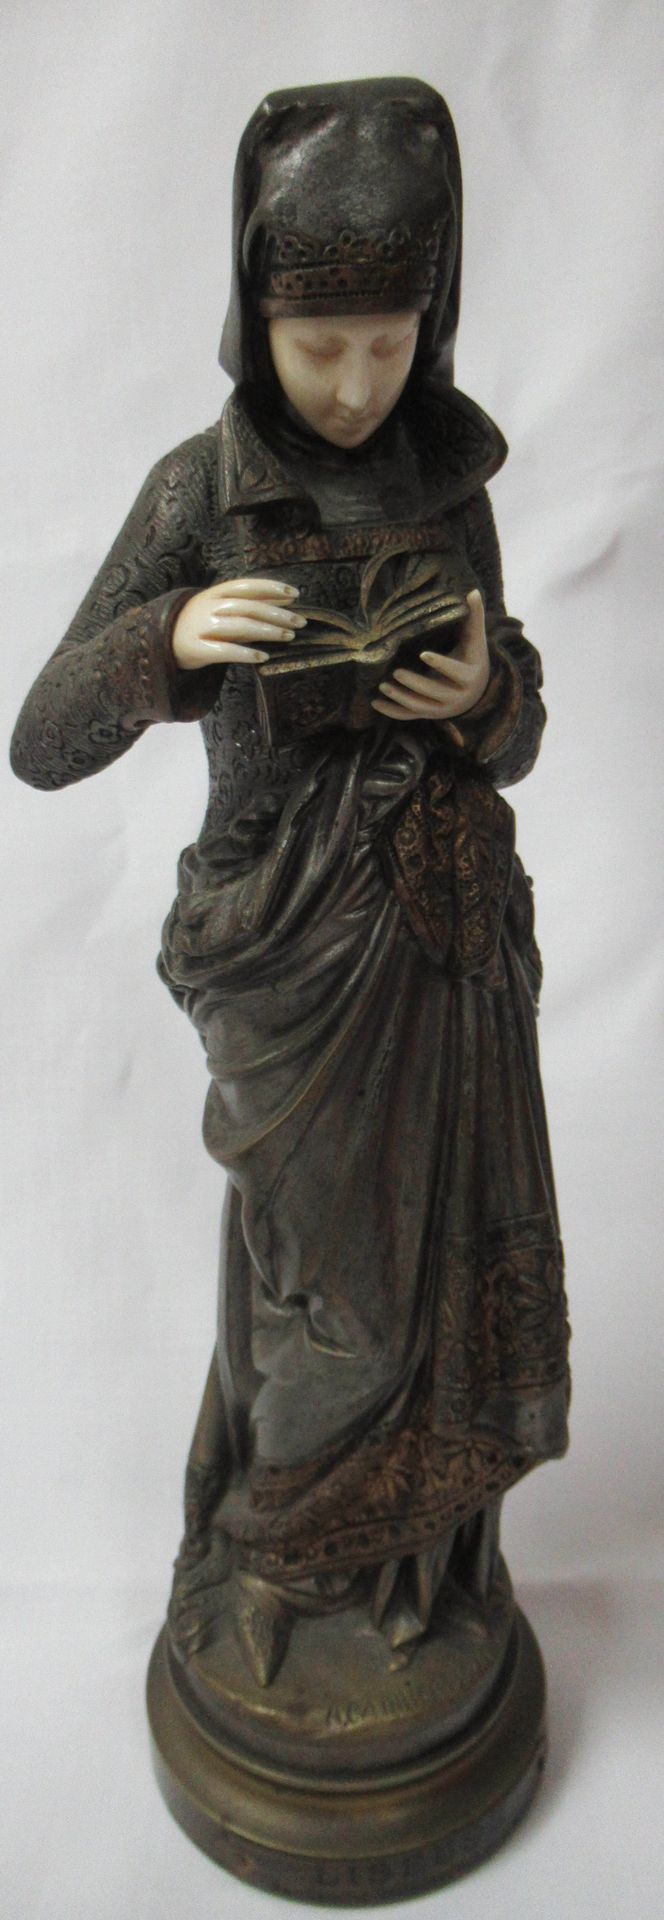 Null Nach Carrier-Belleuse "Liseuse" Chryselephantine-Skulptur. Höhe: 32 cm